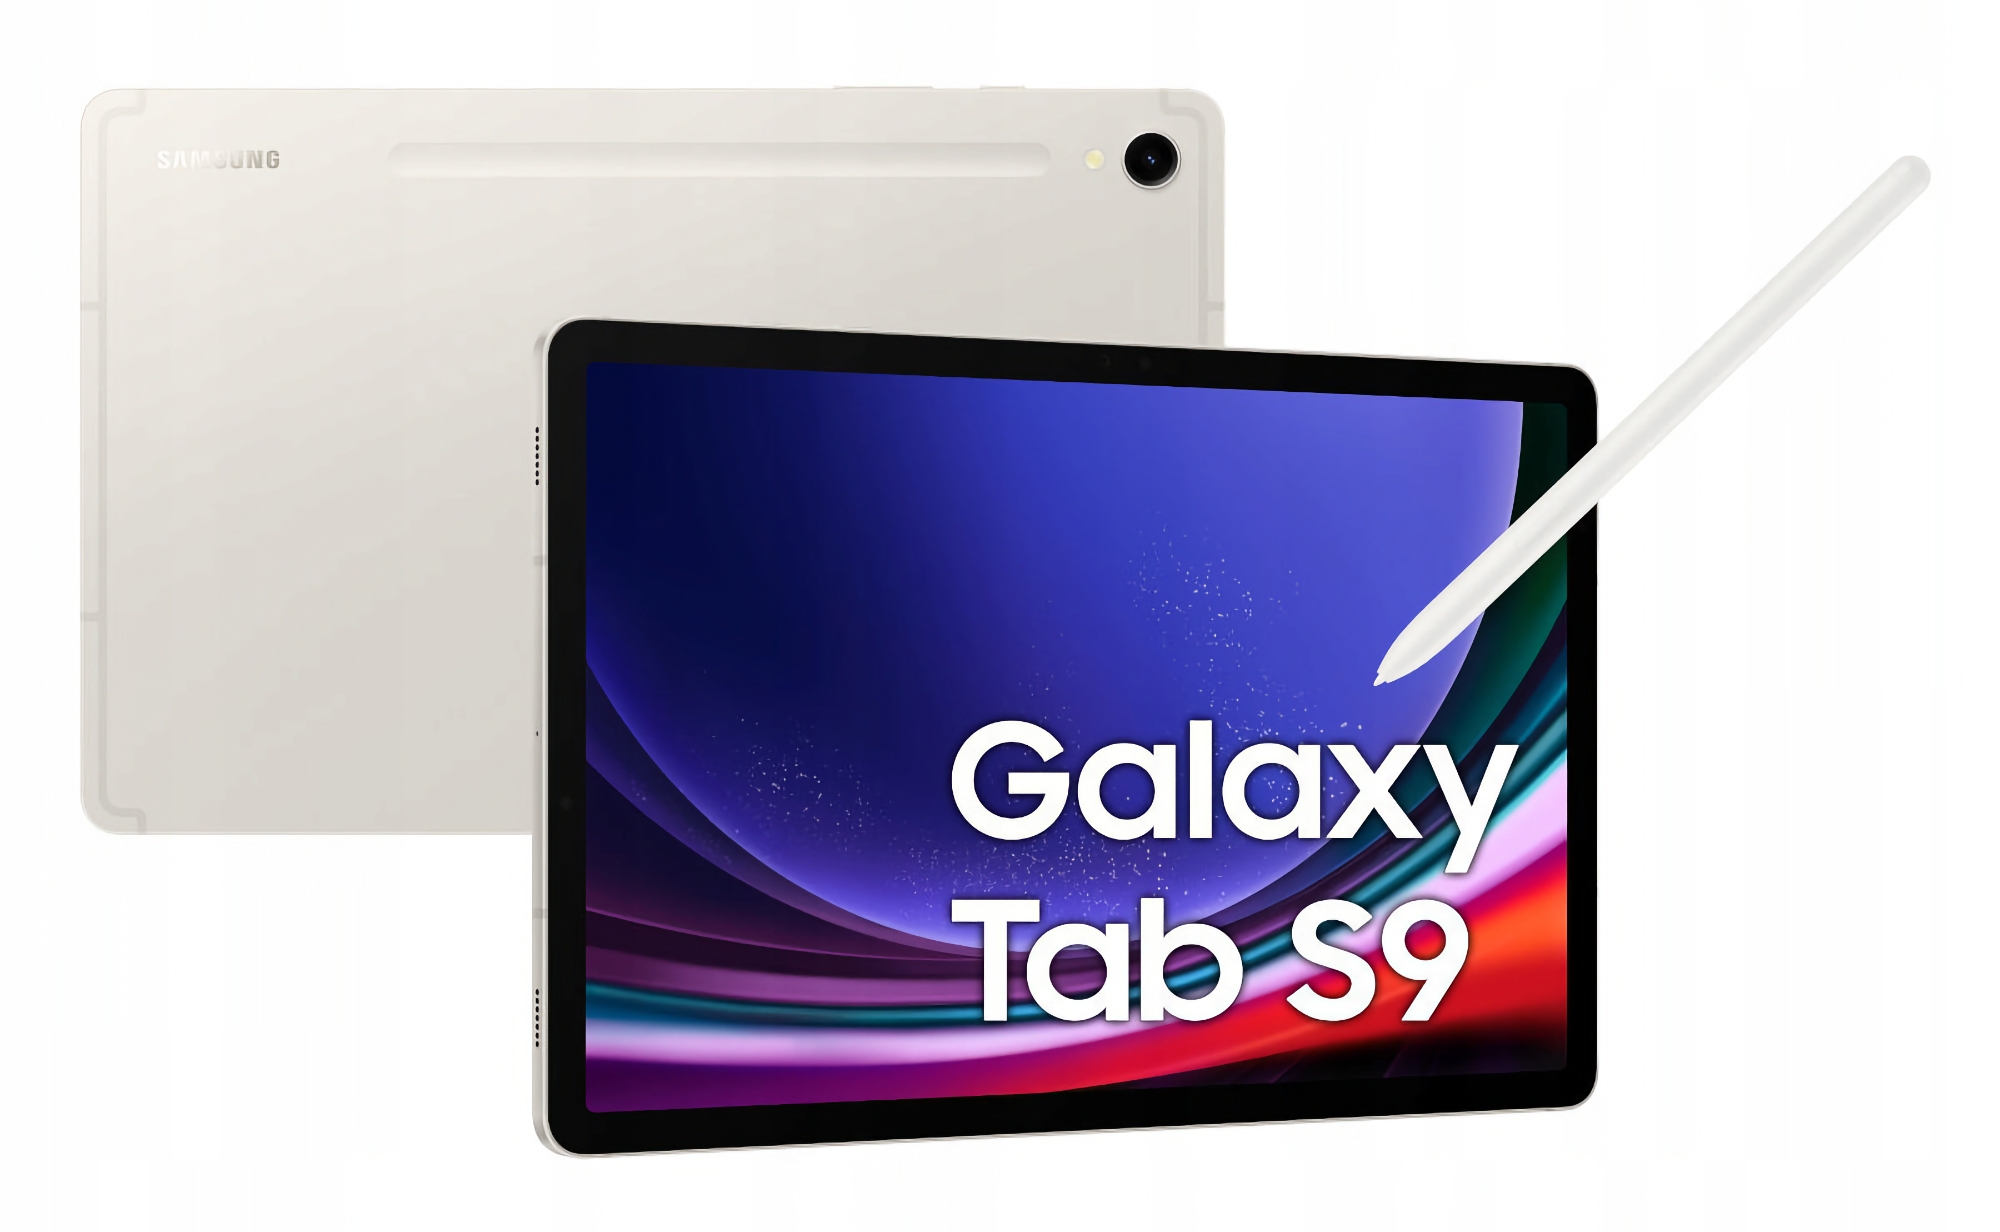 Samsung Galaxy Tab S9 med 256 GB lagringsutrymme kan köpas på Amazon med en rabatt på $166